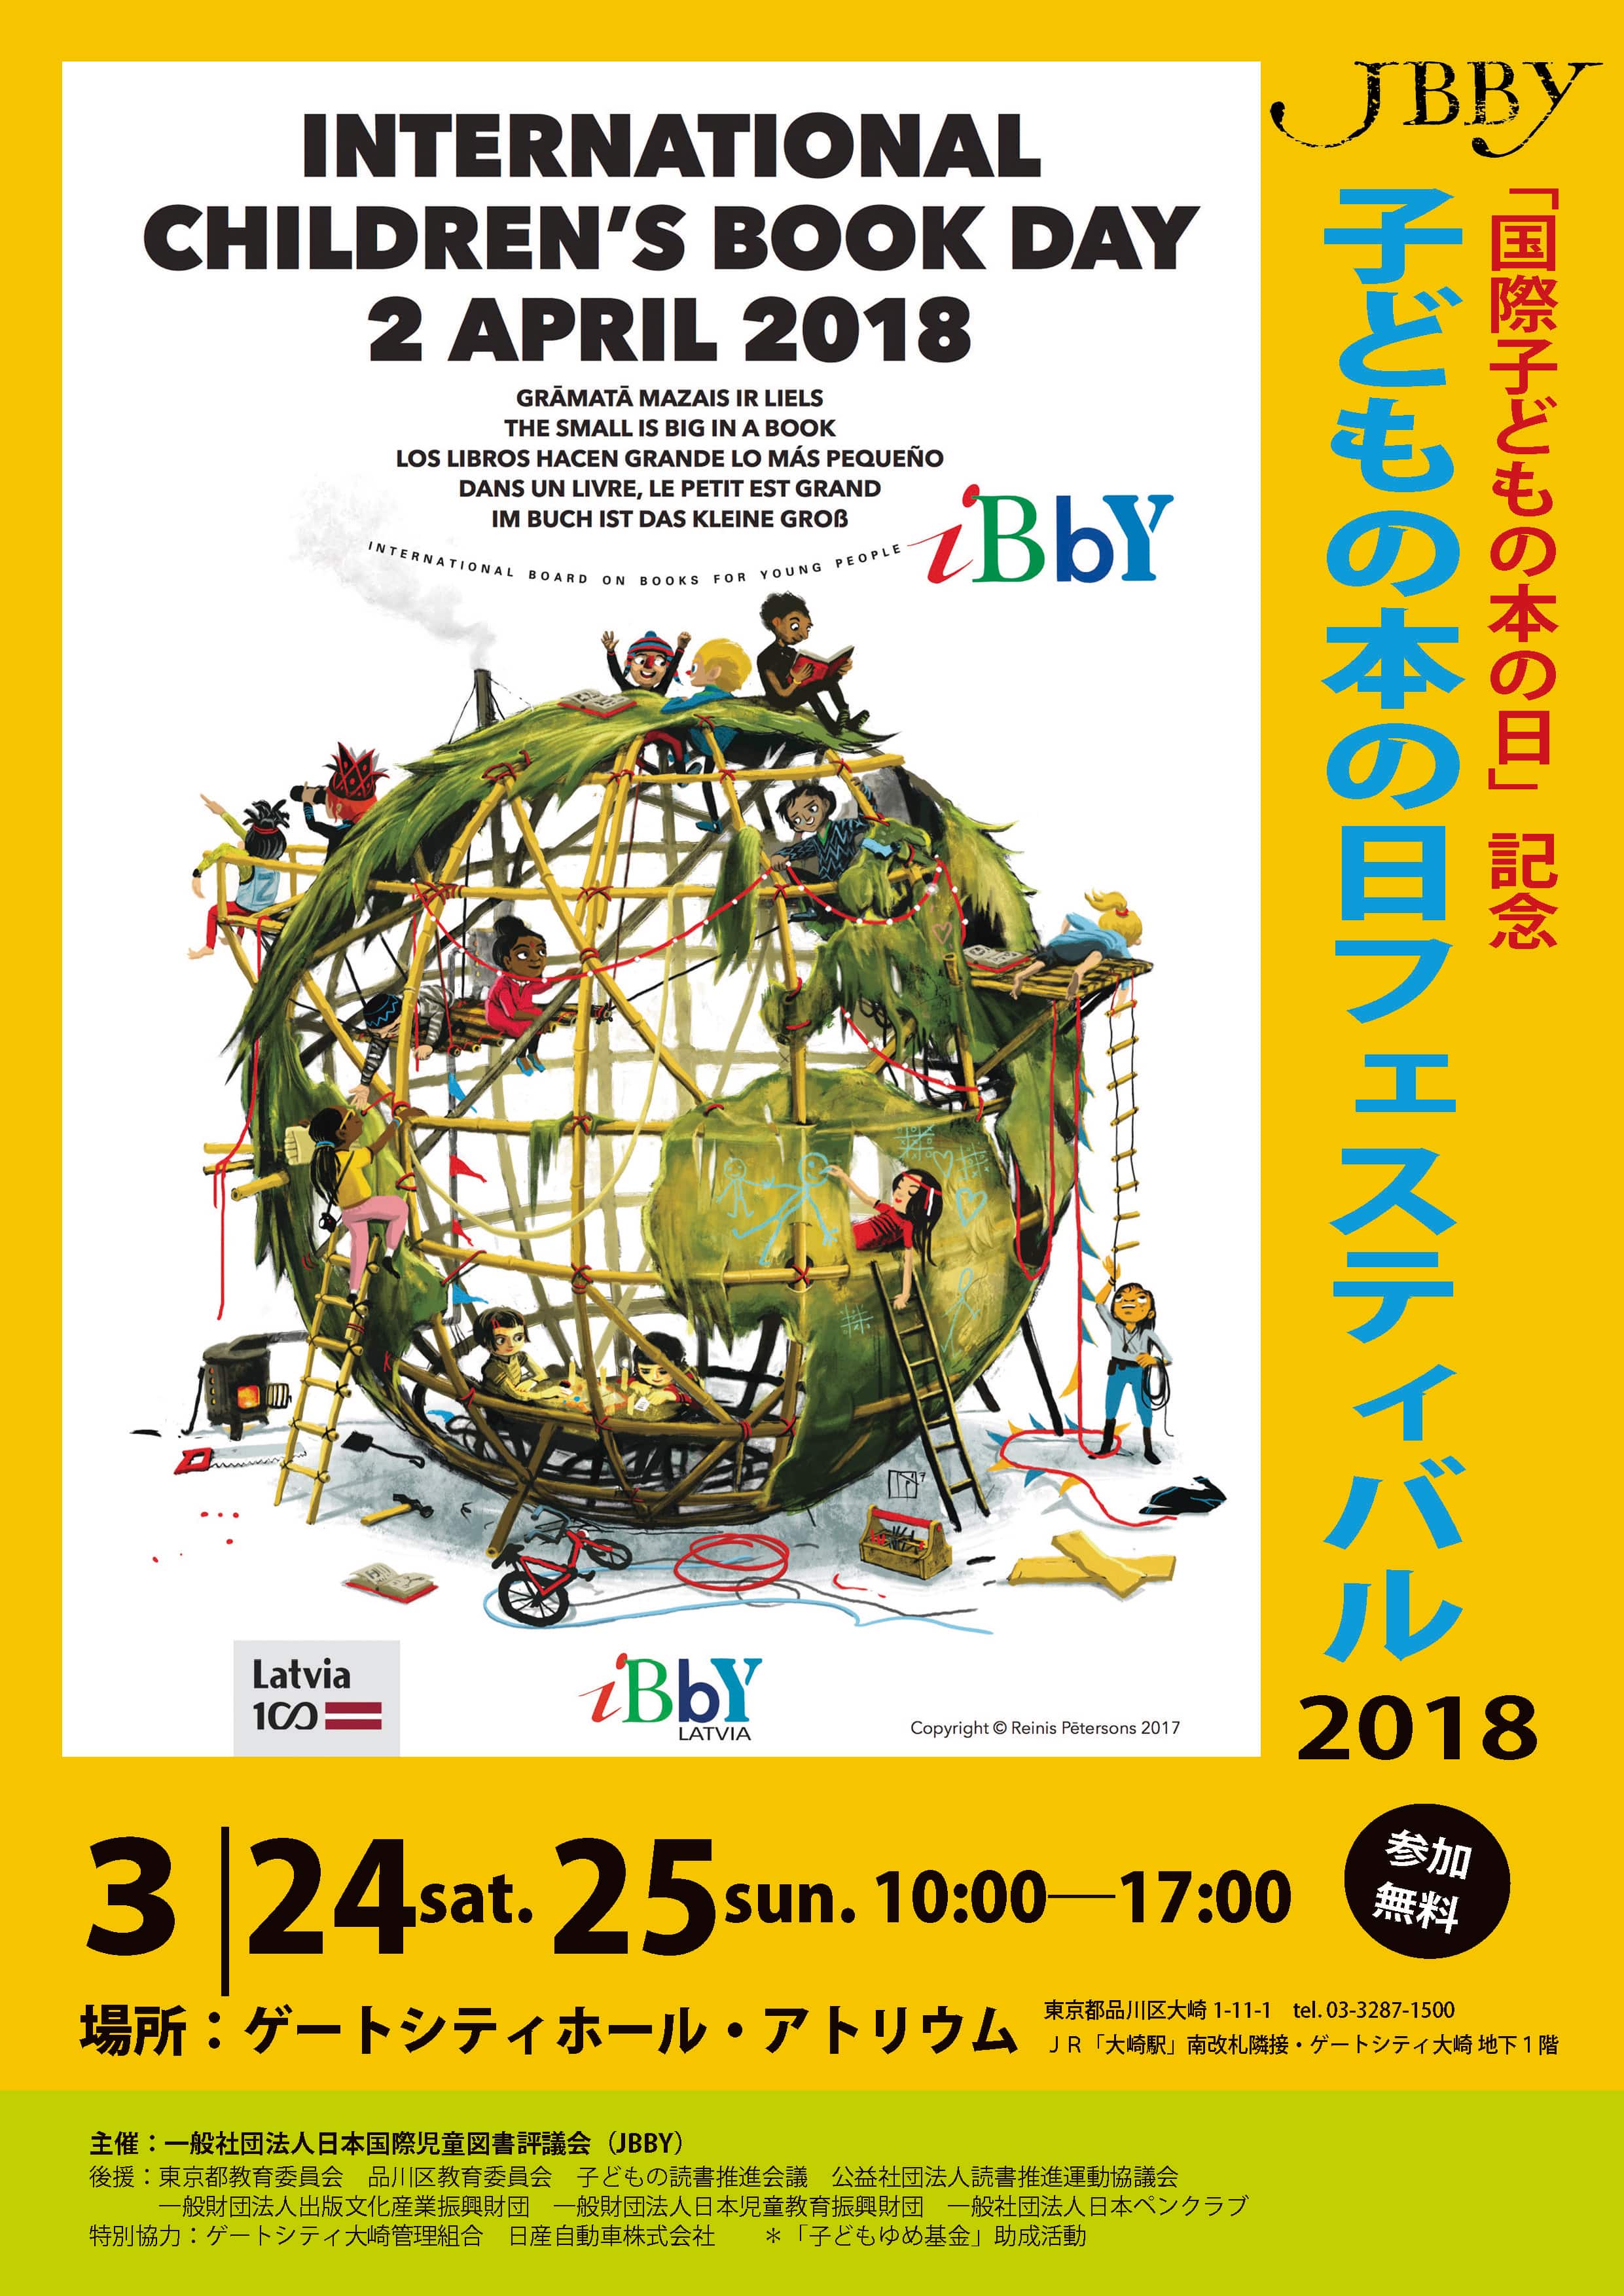 3月24日 土 25日 日 日本国際児童図書評議会主催 国際子どもの本の日記念 子どもの本フェスティバル18で女子美術大学学生制作 見えない子どもたちが始めて出会う絵本 などの展示を行います バリアフリー絵本